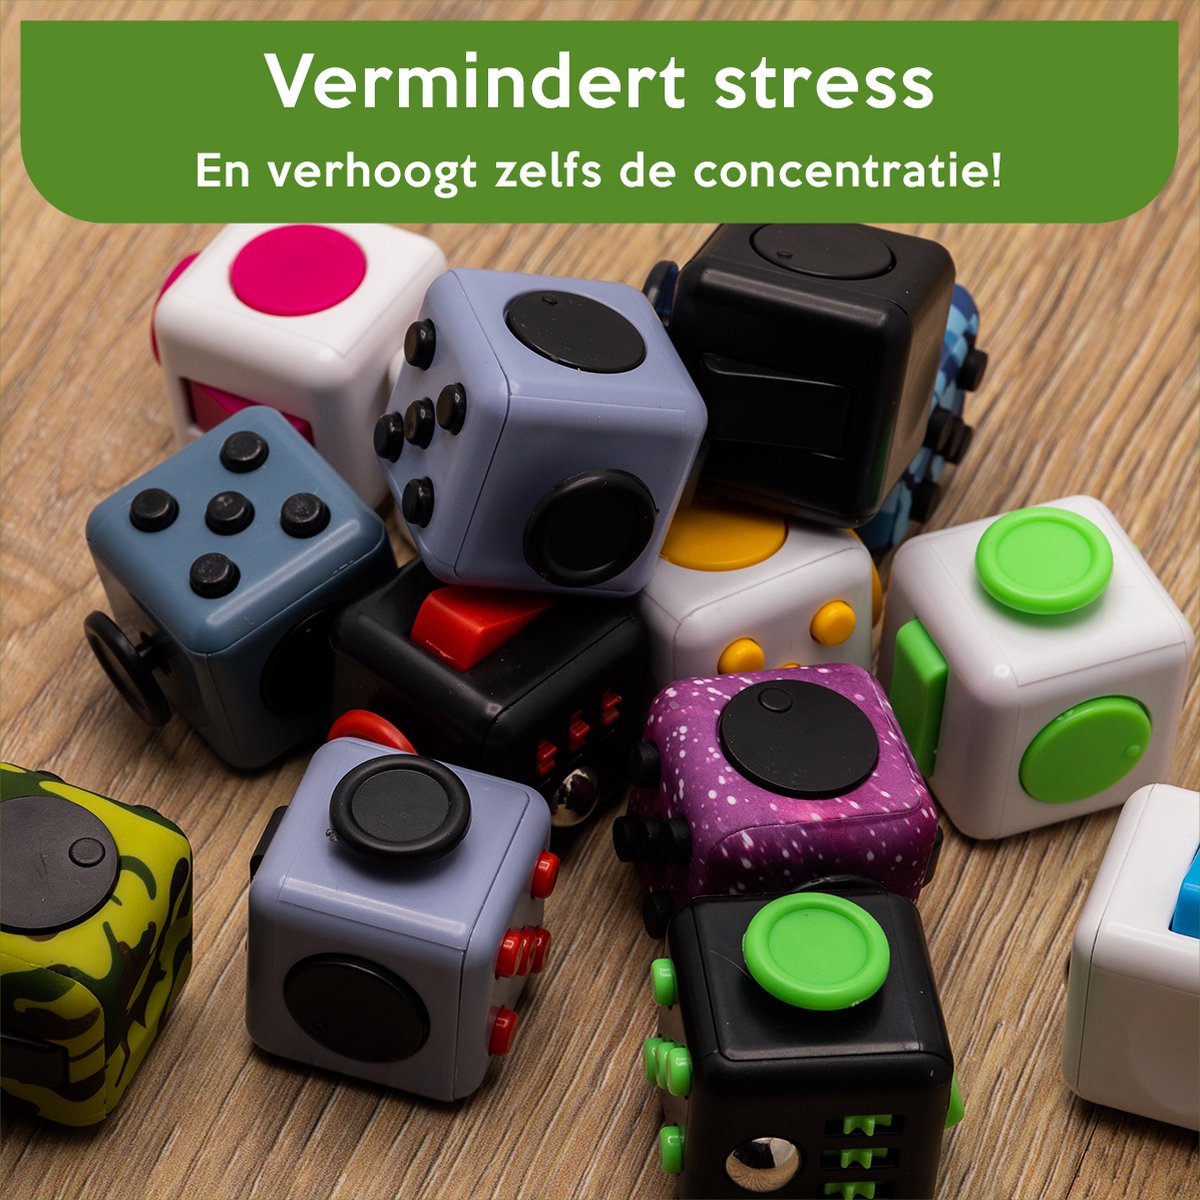 Fidget Cube Anti Stress Enfant Adulte - Fidget Toys Objet Anti Stress  Anxiété - Jouet De Decompression avec 6 Modules Apaisants (Blanc) HA